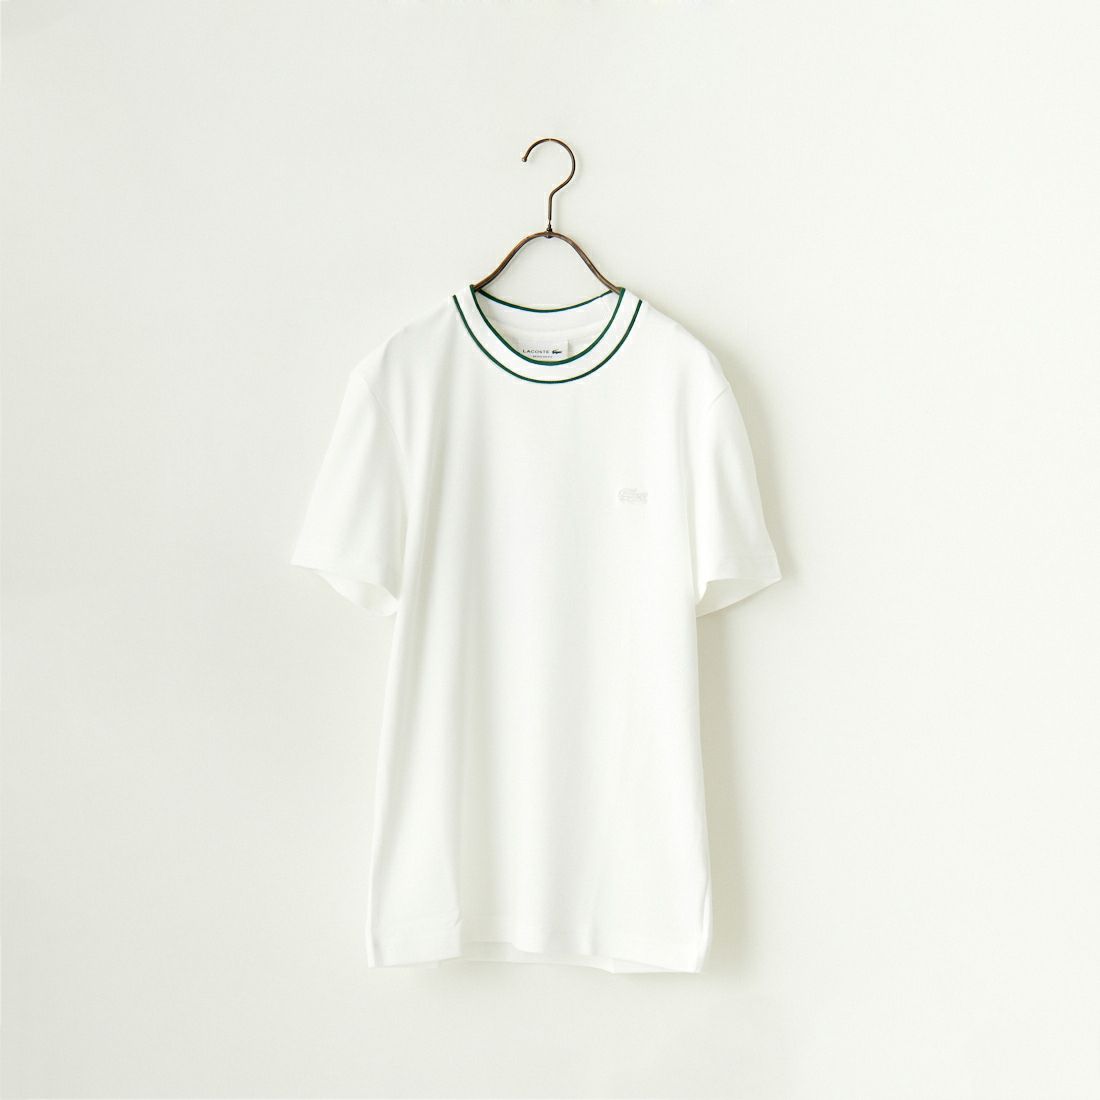 LACOSTE [ラコステ] ラインドリブネック鹿の子Tシャツ [TH1004] 001 WHITE